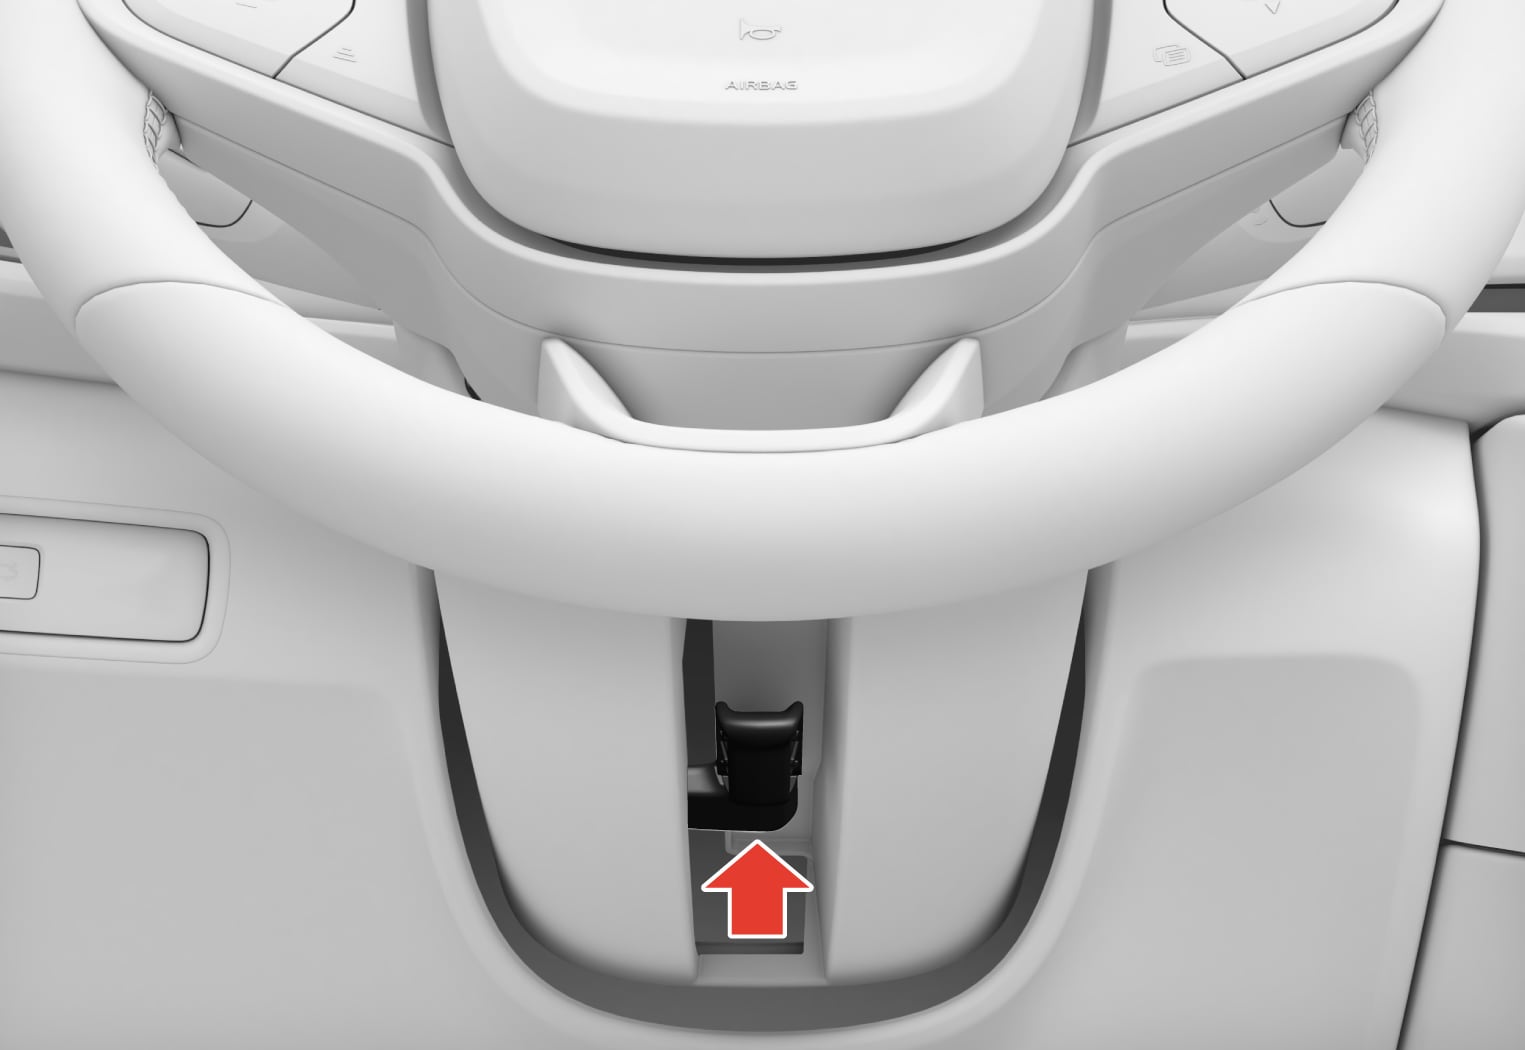 PS2-2222-Adjusting steering wheel with knee airbag